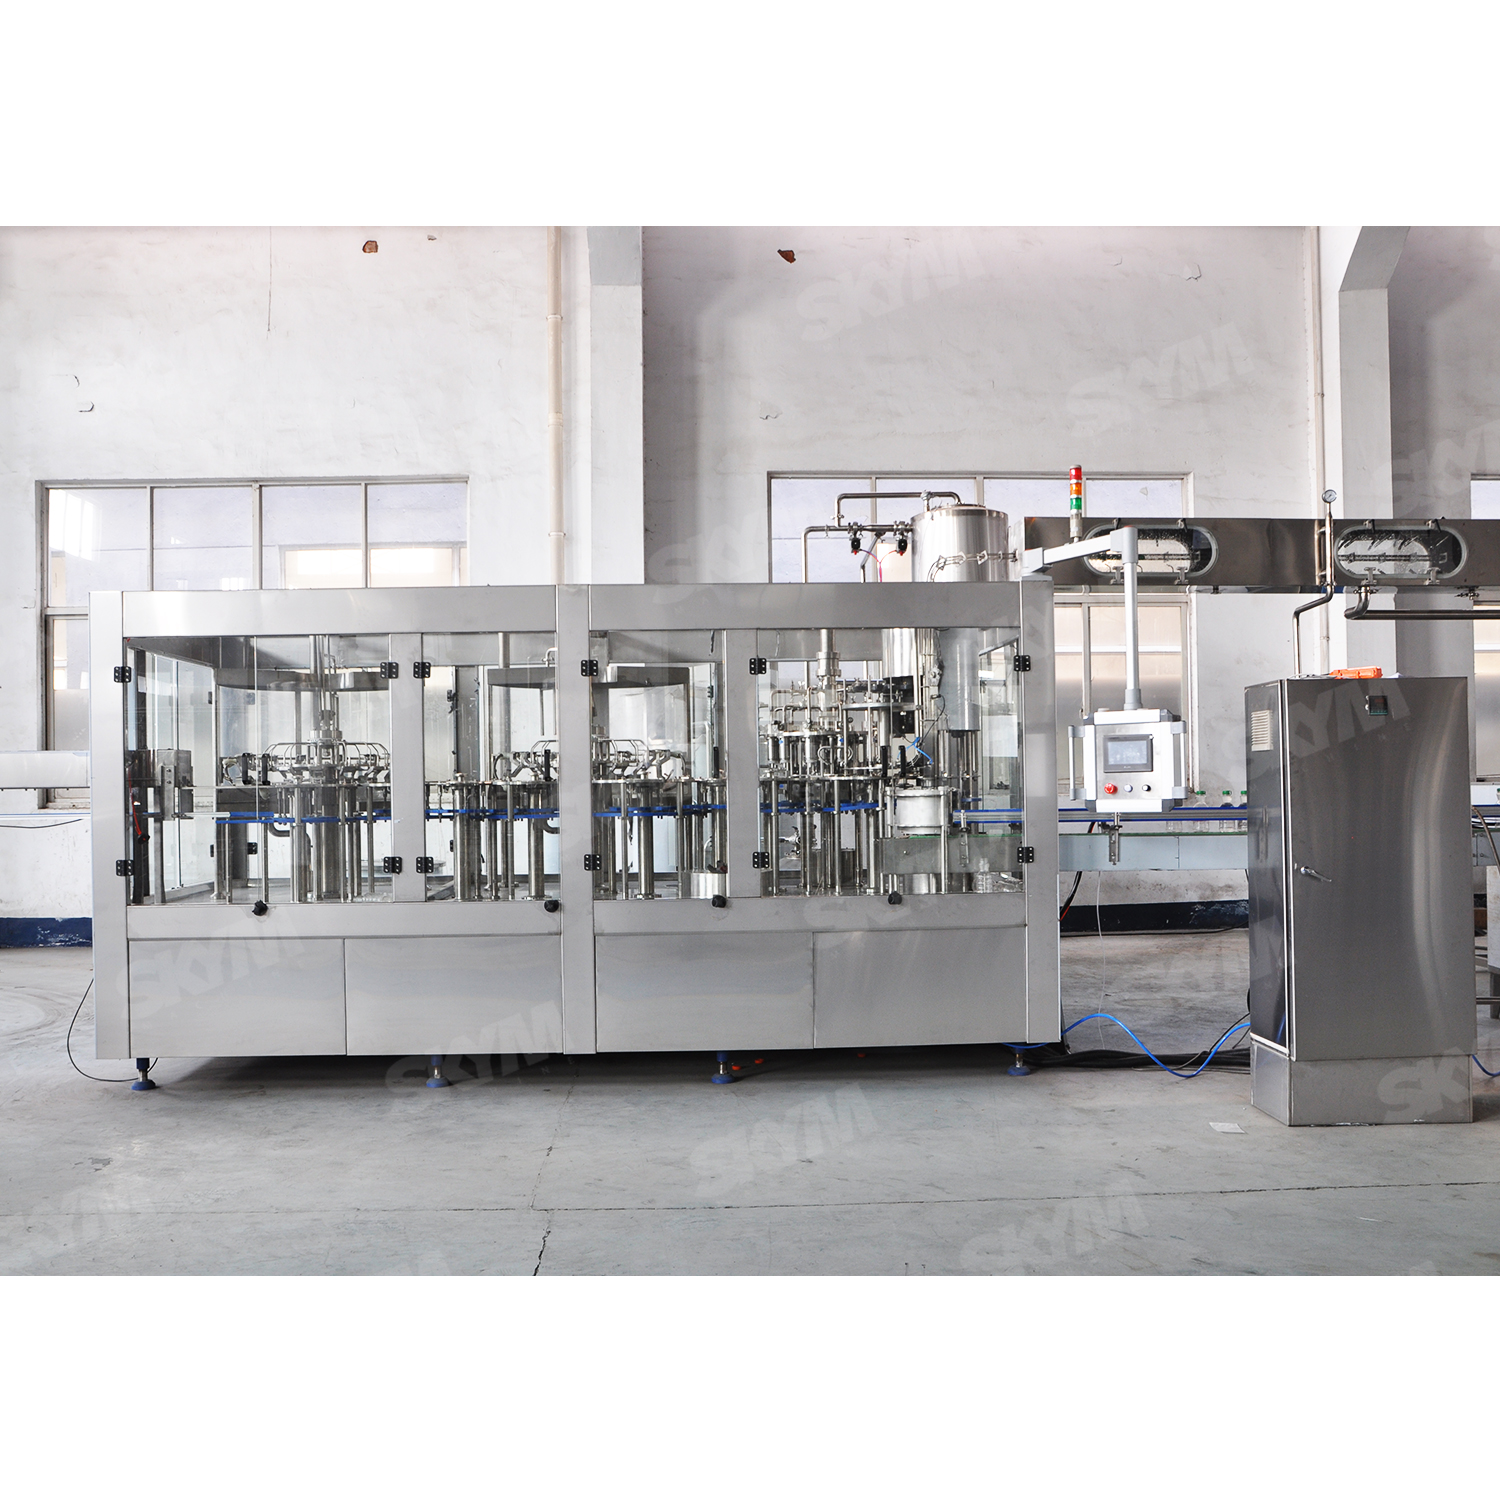 Plastic Bottle Juice Filling Machine for Factory Production Line 